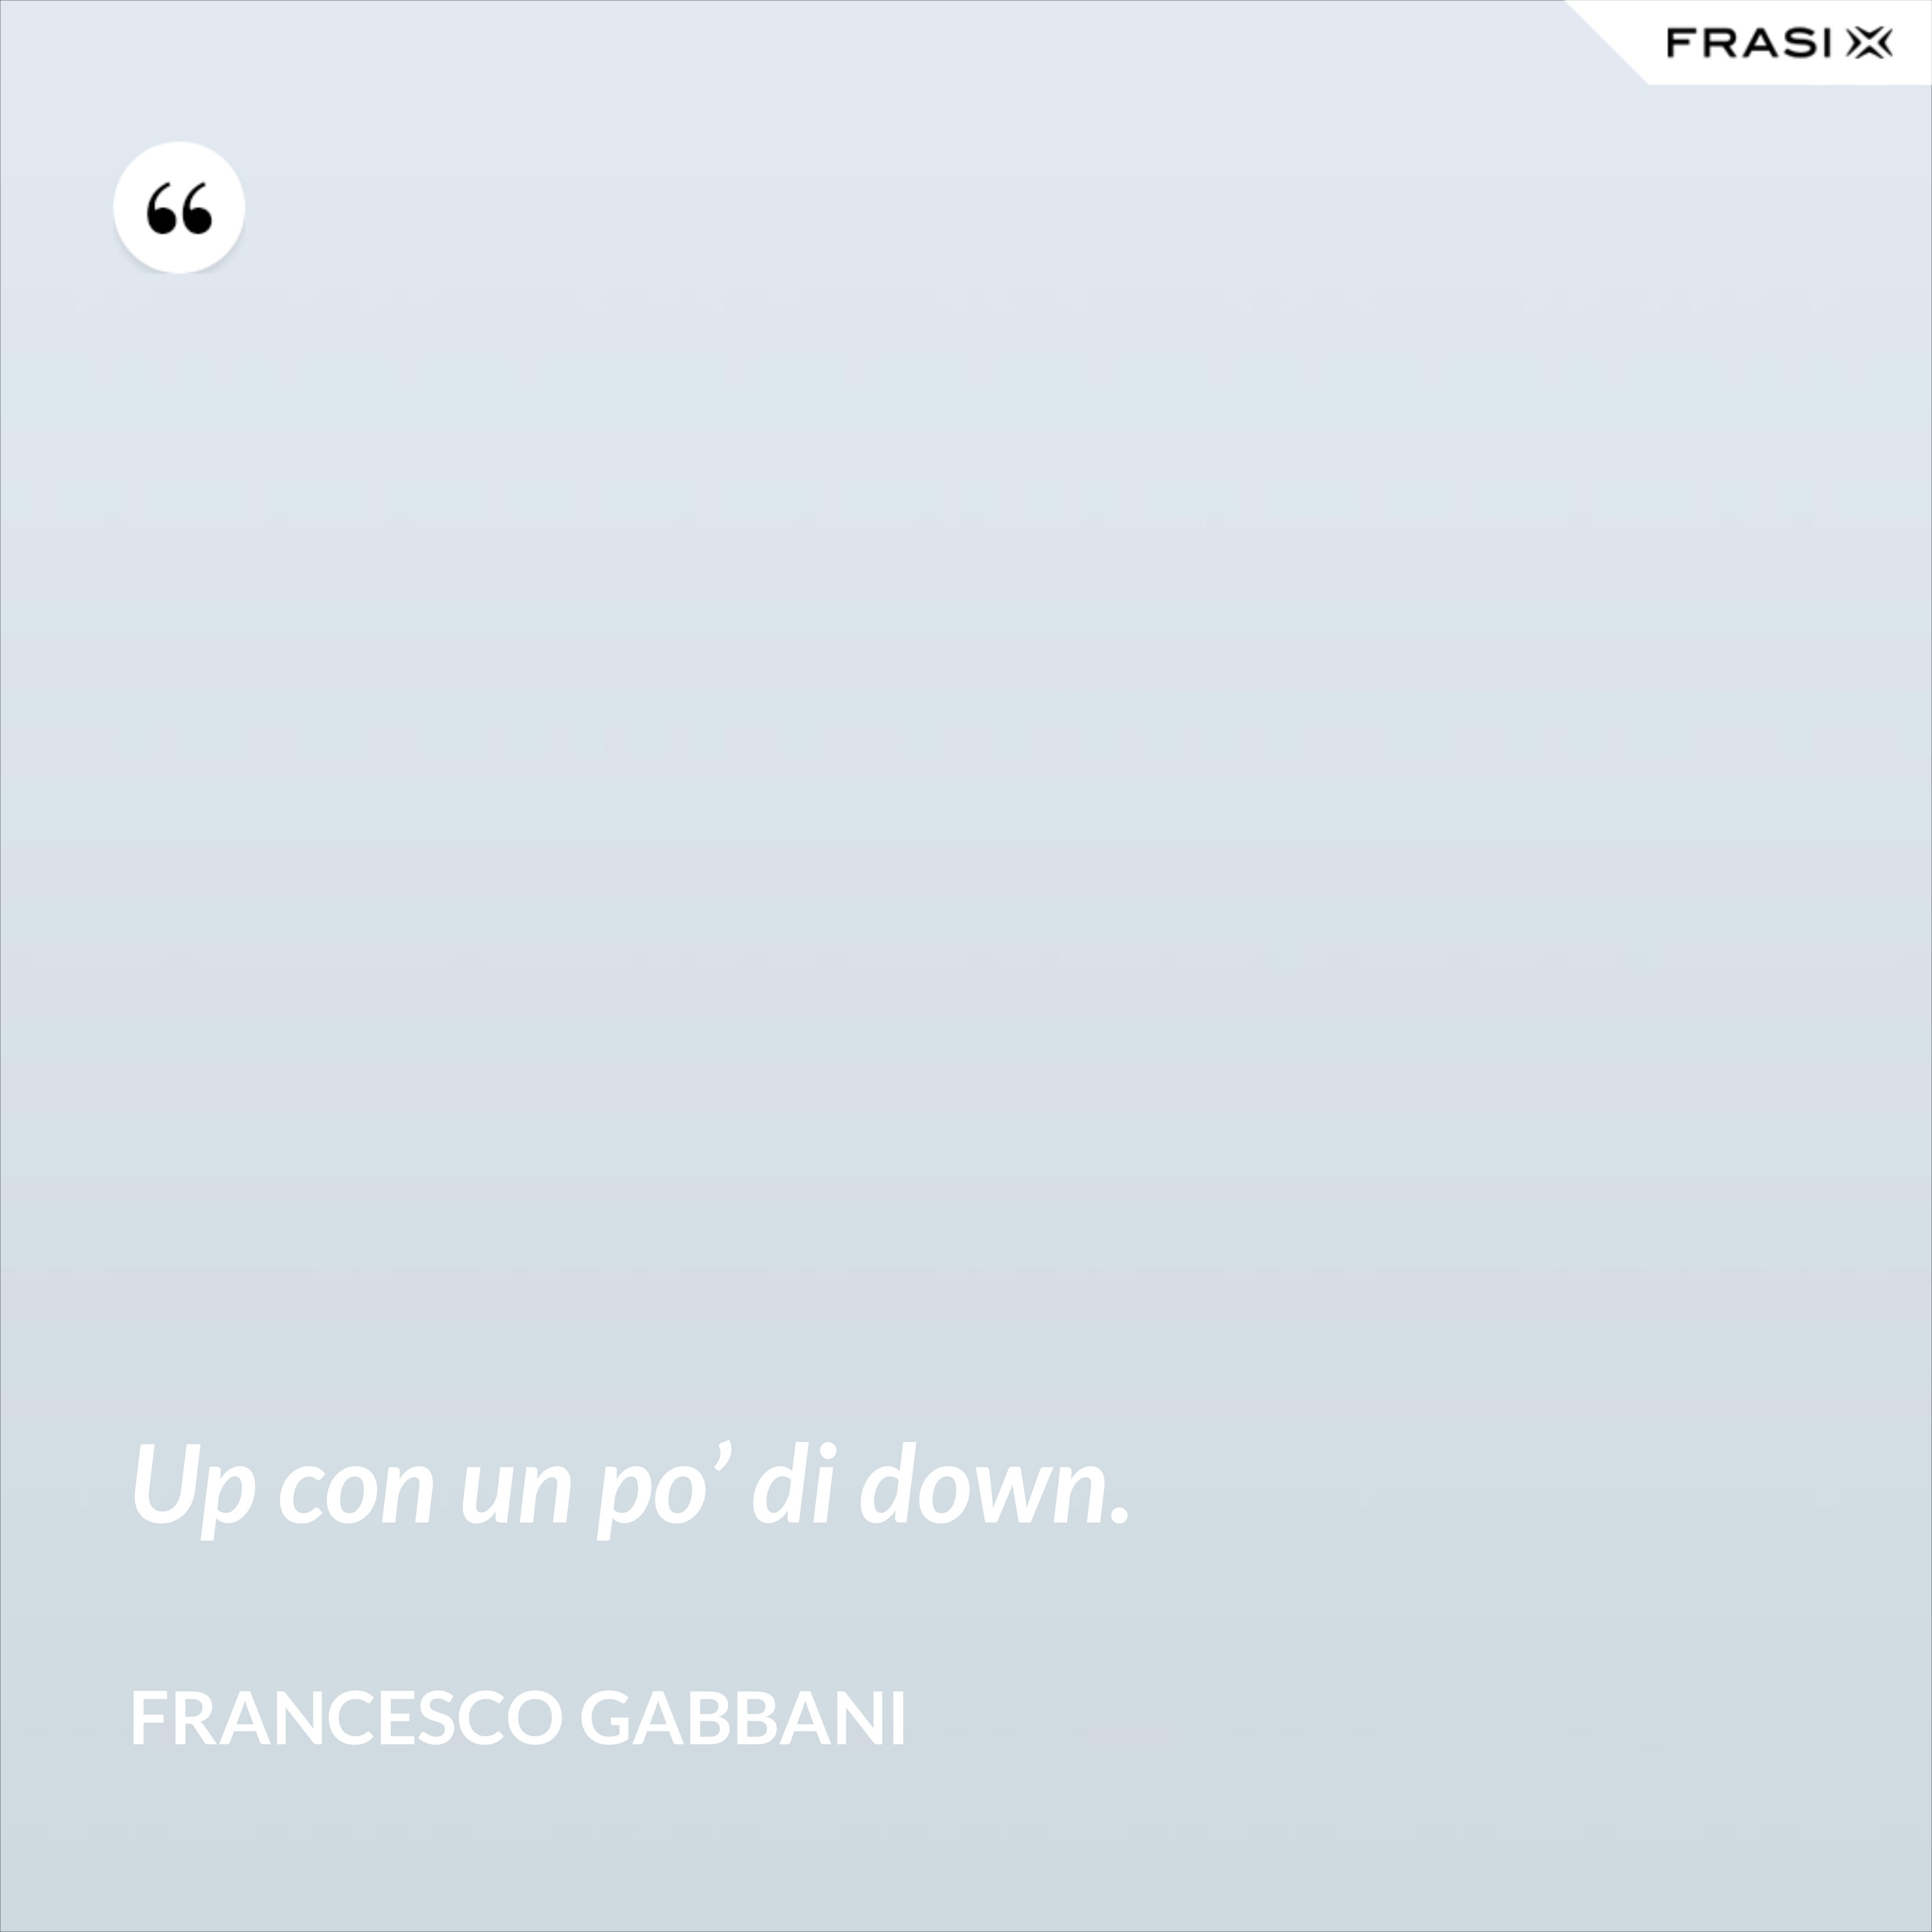 Up con un po’ di down. - Francesco Gabbani